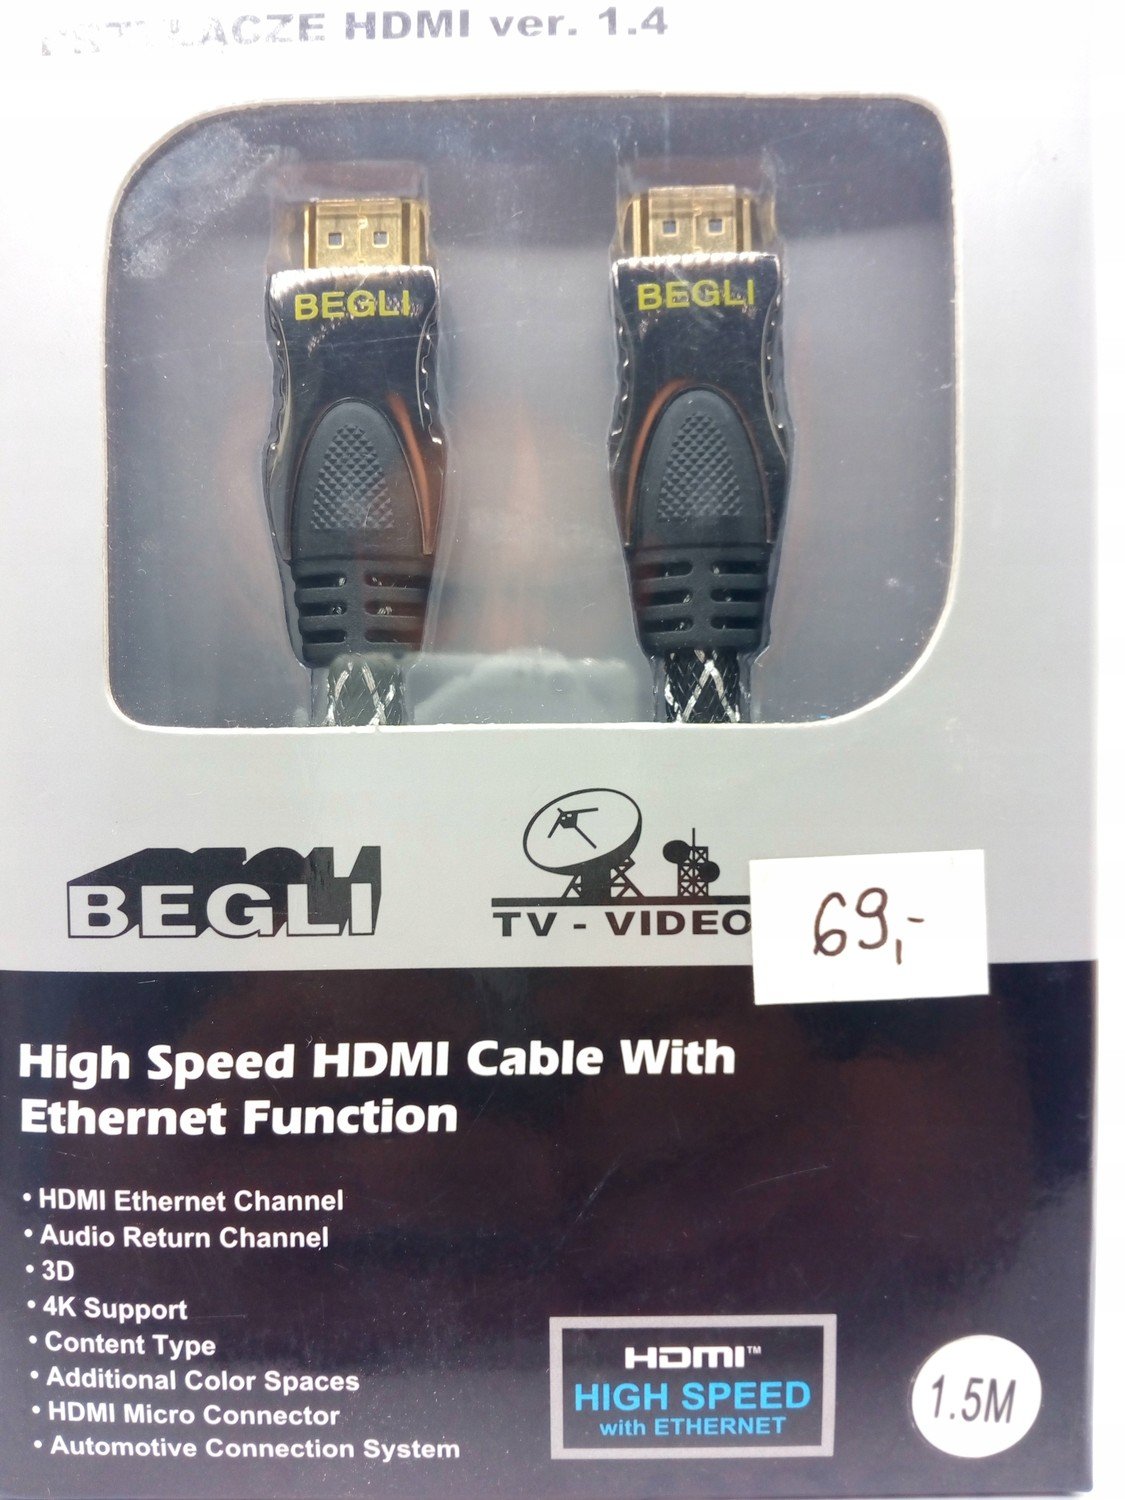 Kabel Hdmi-hdmi VER.1.4 Vysokorychlostní Nový Model 1,5M